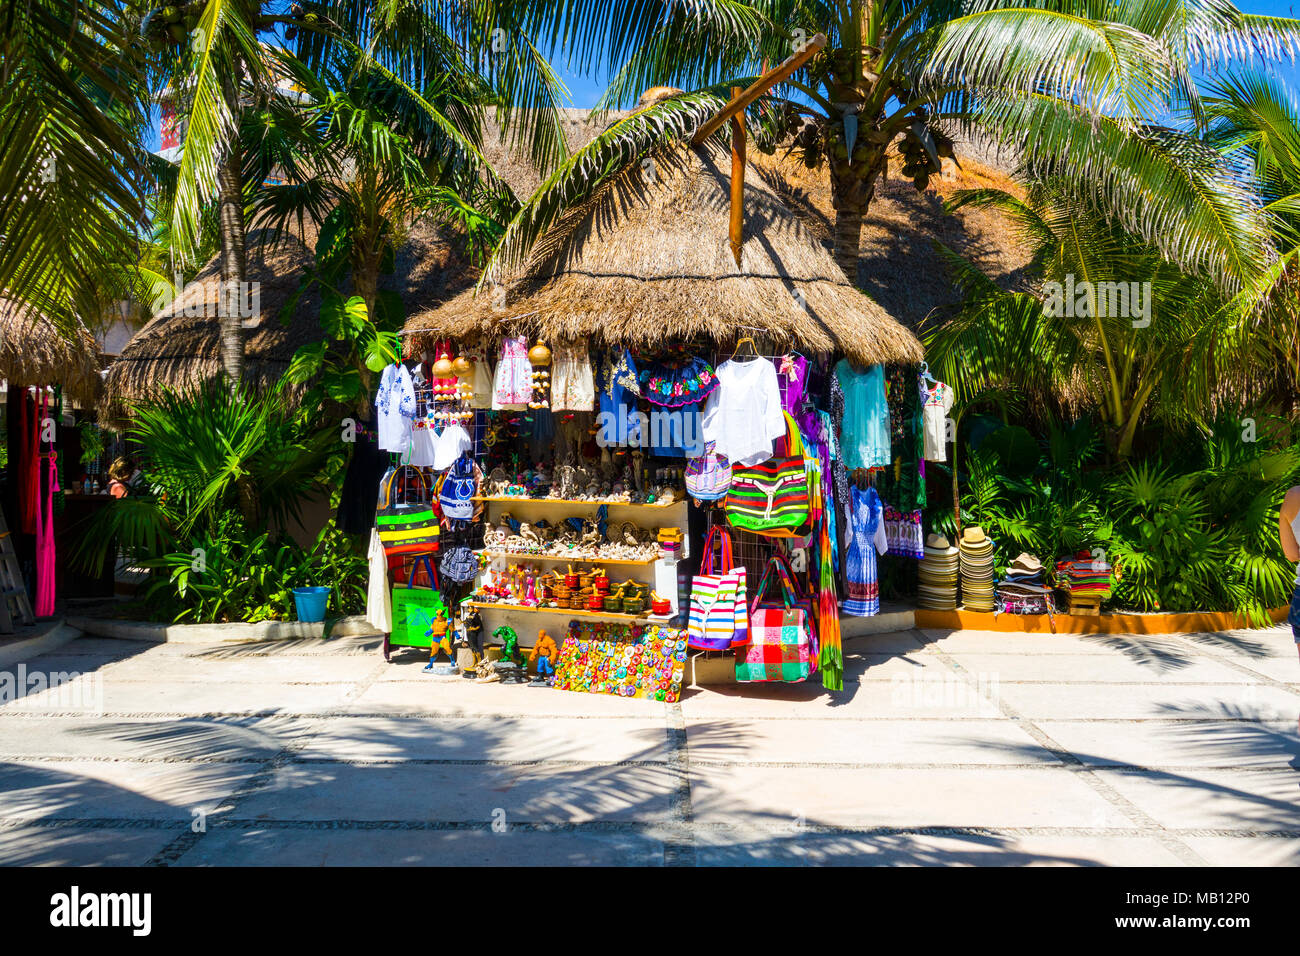 Die Kreuzfahrt Reiseziel Costa Maya Mexiko Amerika ist ein beliebter Zwischenstopp auf der westlichen Karibik Kreuzfahrt Schiff Tour und bietet Einkaufsmöglichkeiten und andere sightseein Stockfoto